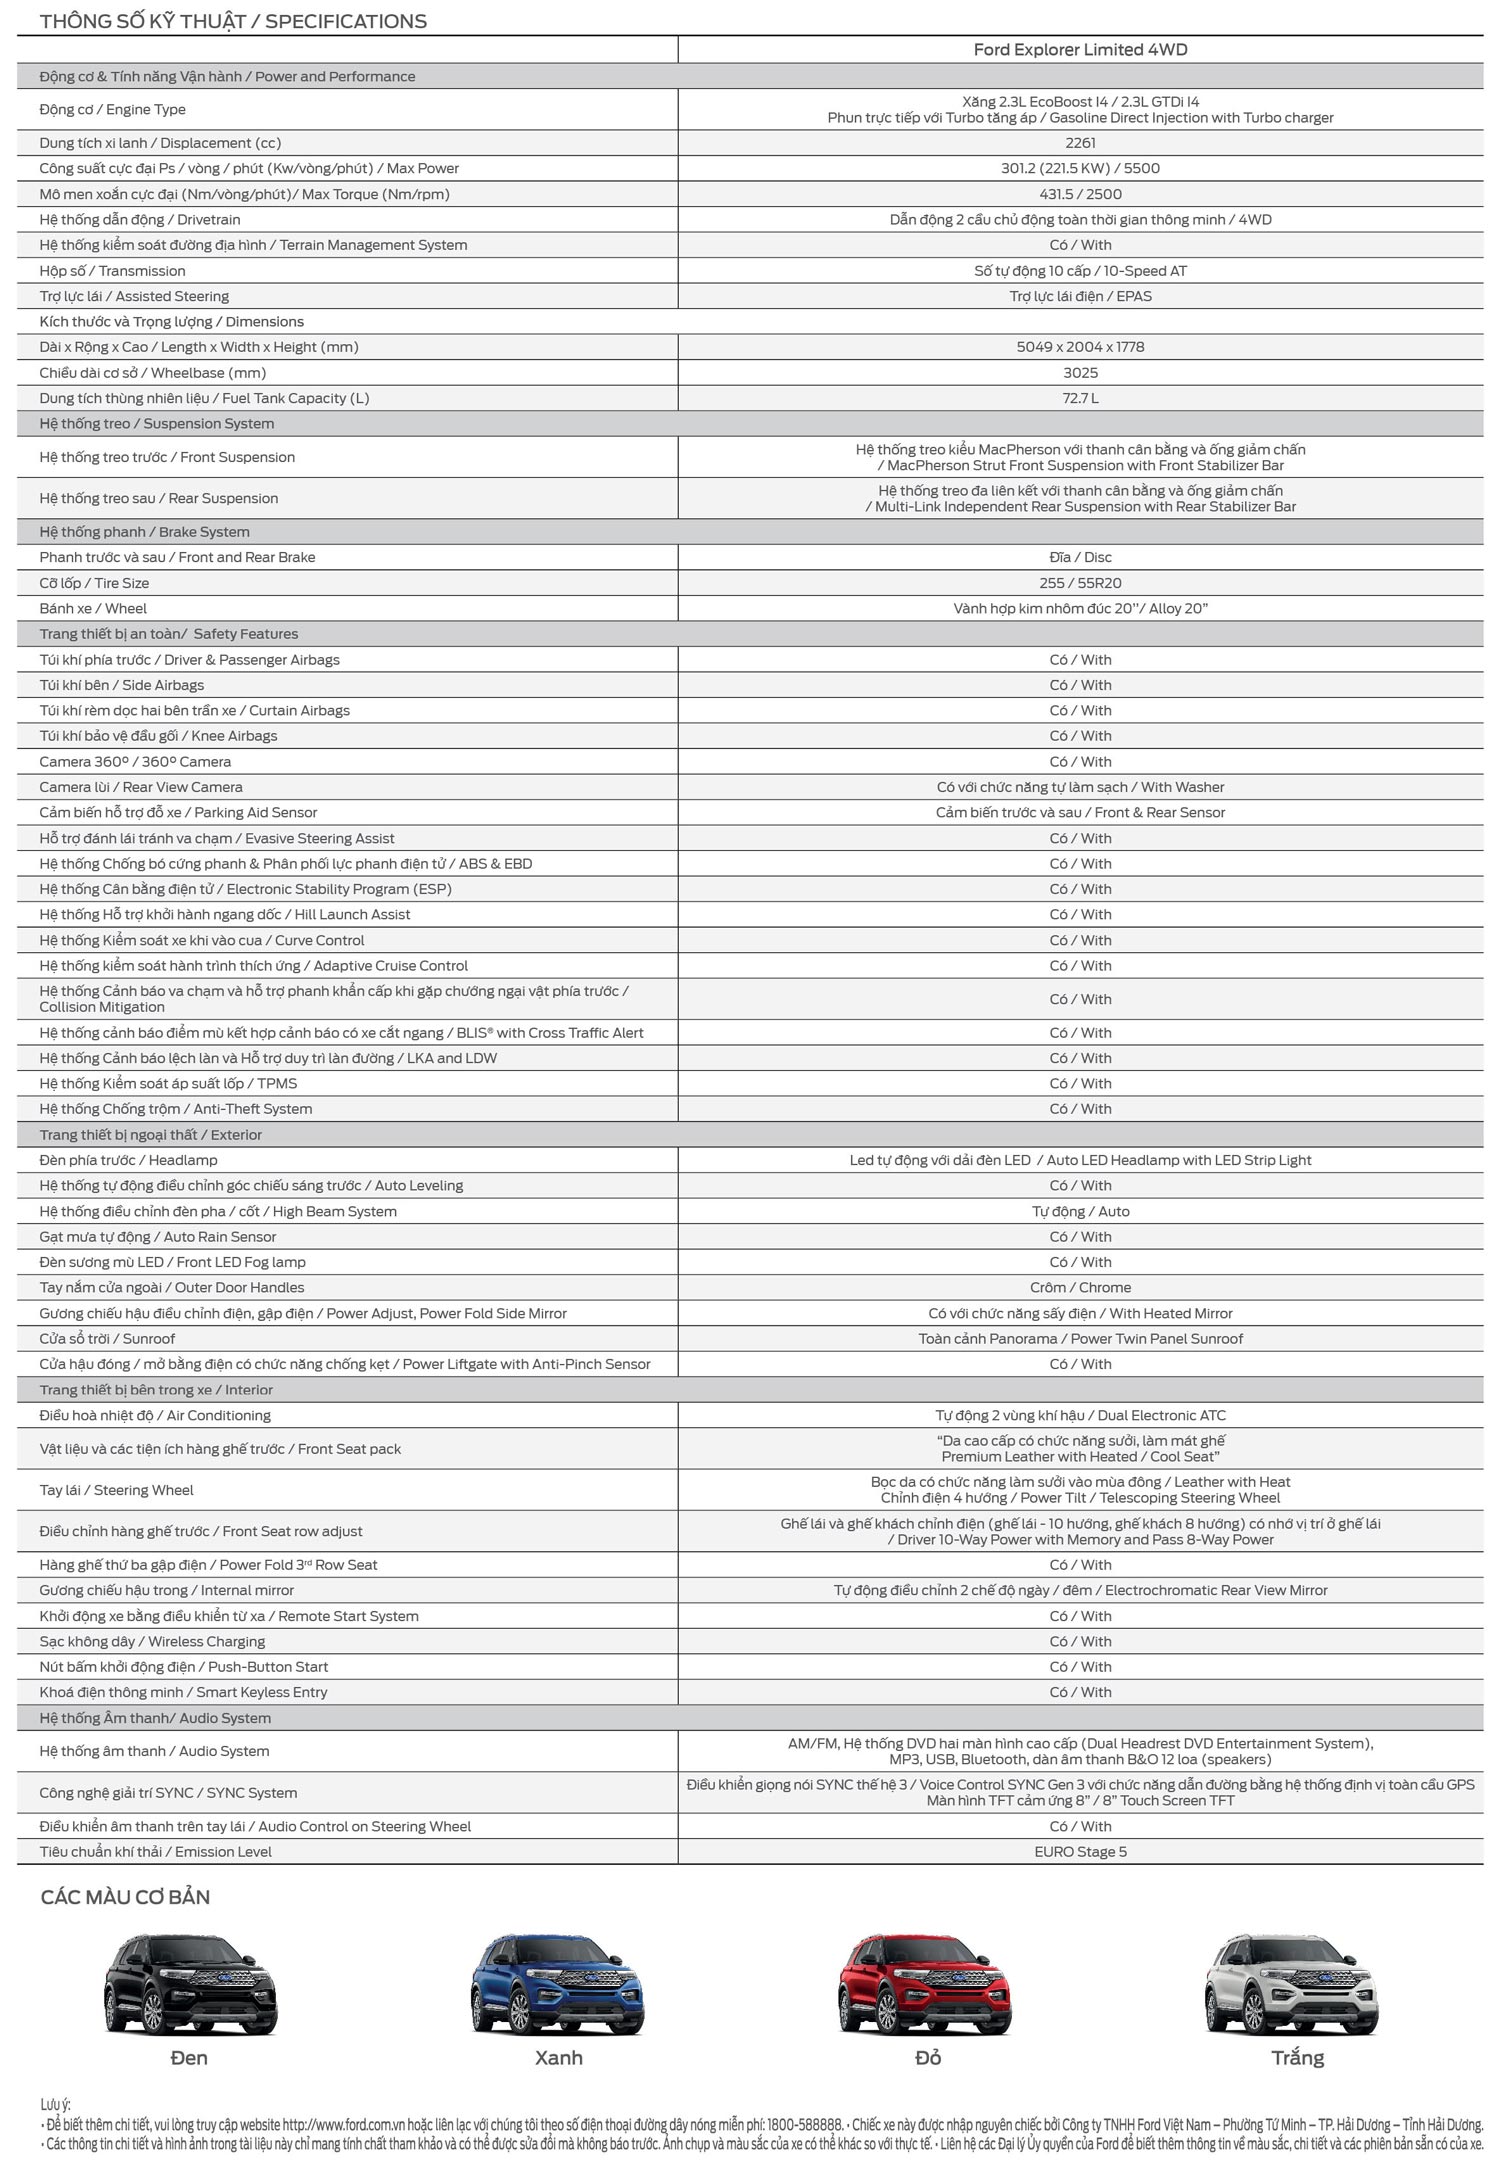 Bảng thông số kỹ thuật chi tiết xe Ford Explorer